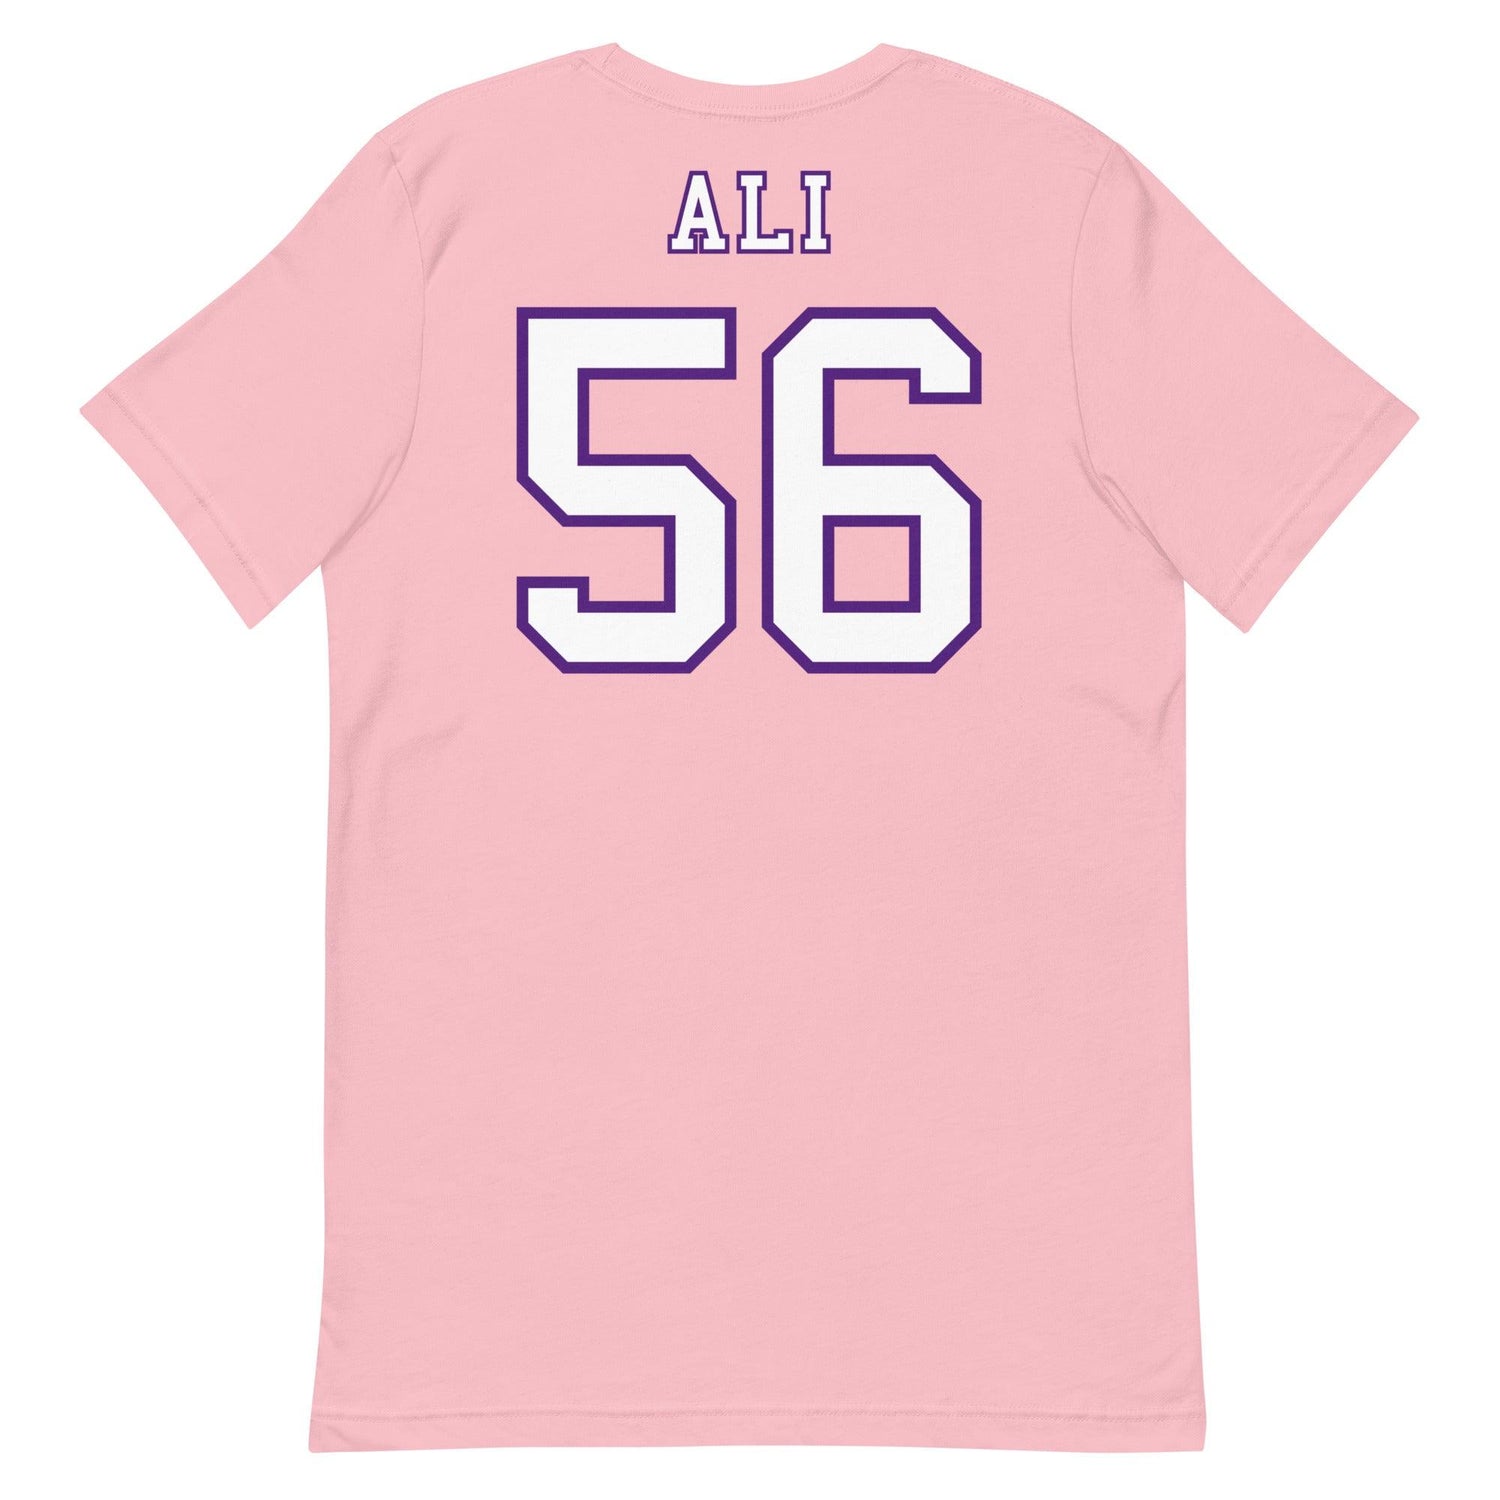 Alan Ali "Jersey" t-shirt - Fan Arch